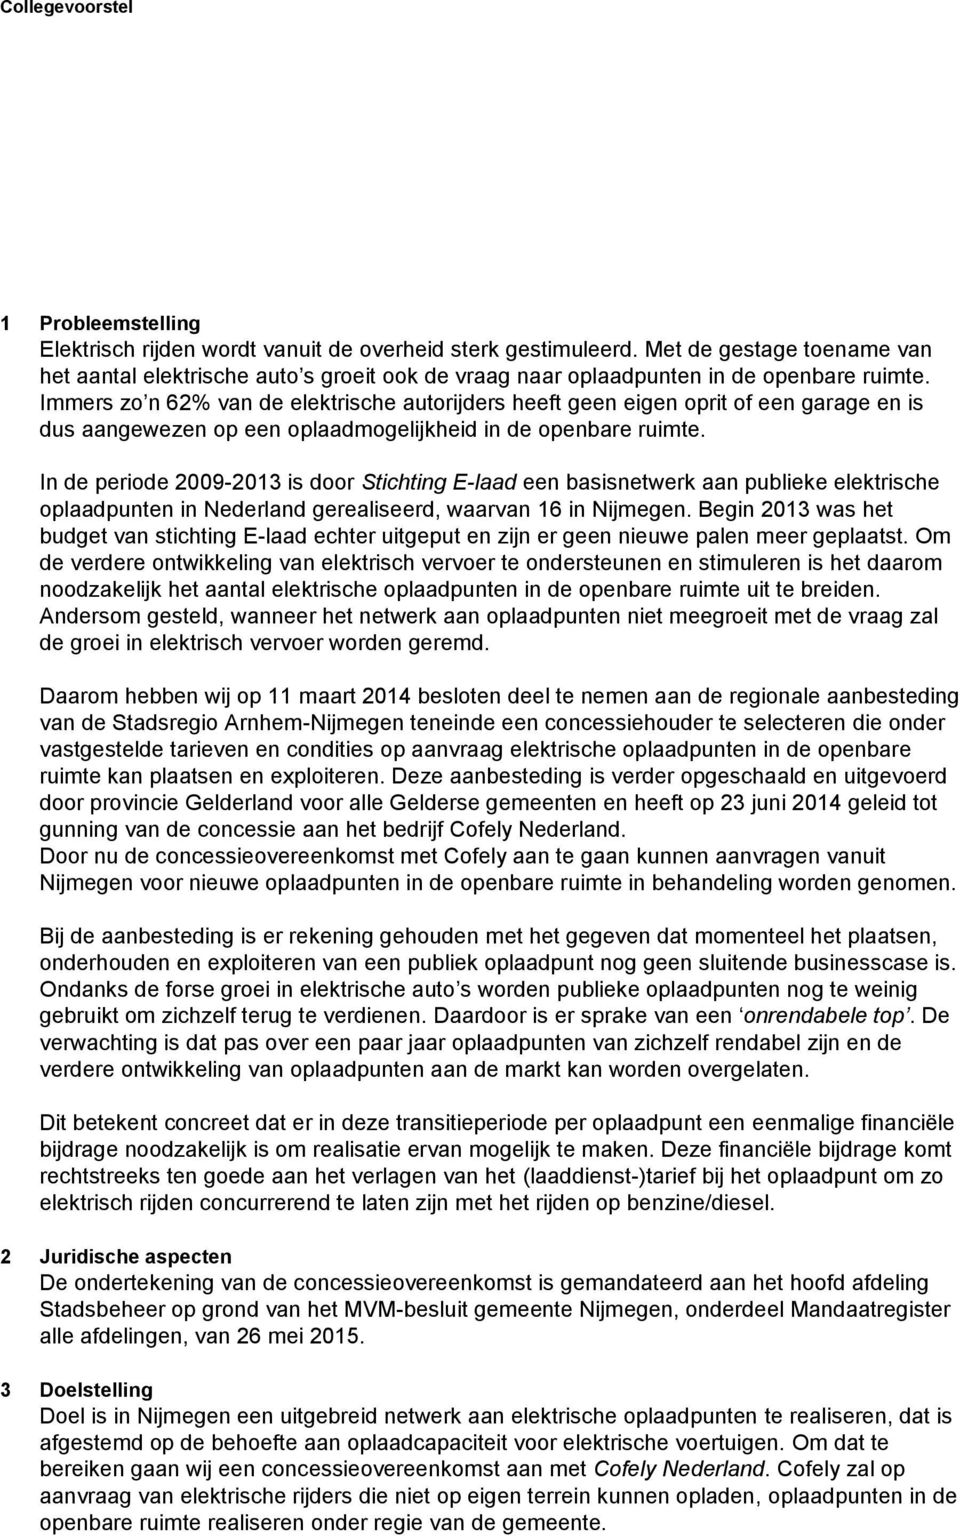 In de periode 2009-2013 is door Stichting E-laad een basisnetwerk aan publieke elektrische oplaadpunten in Nederland gerealiseerd, waarvan 16 in Nijmegen.